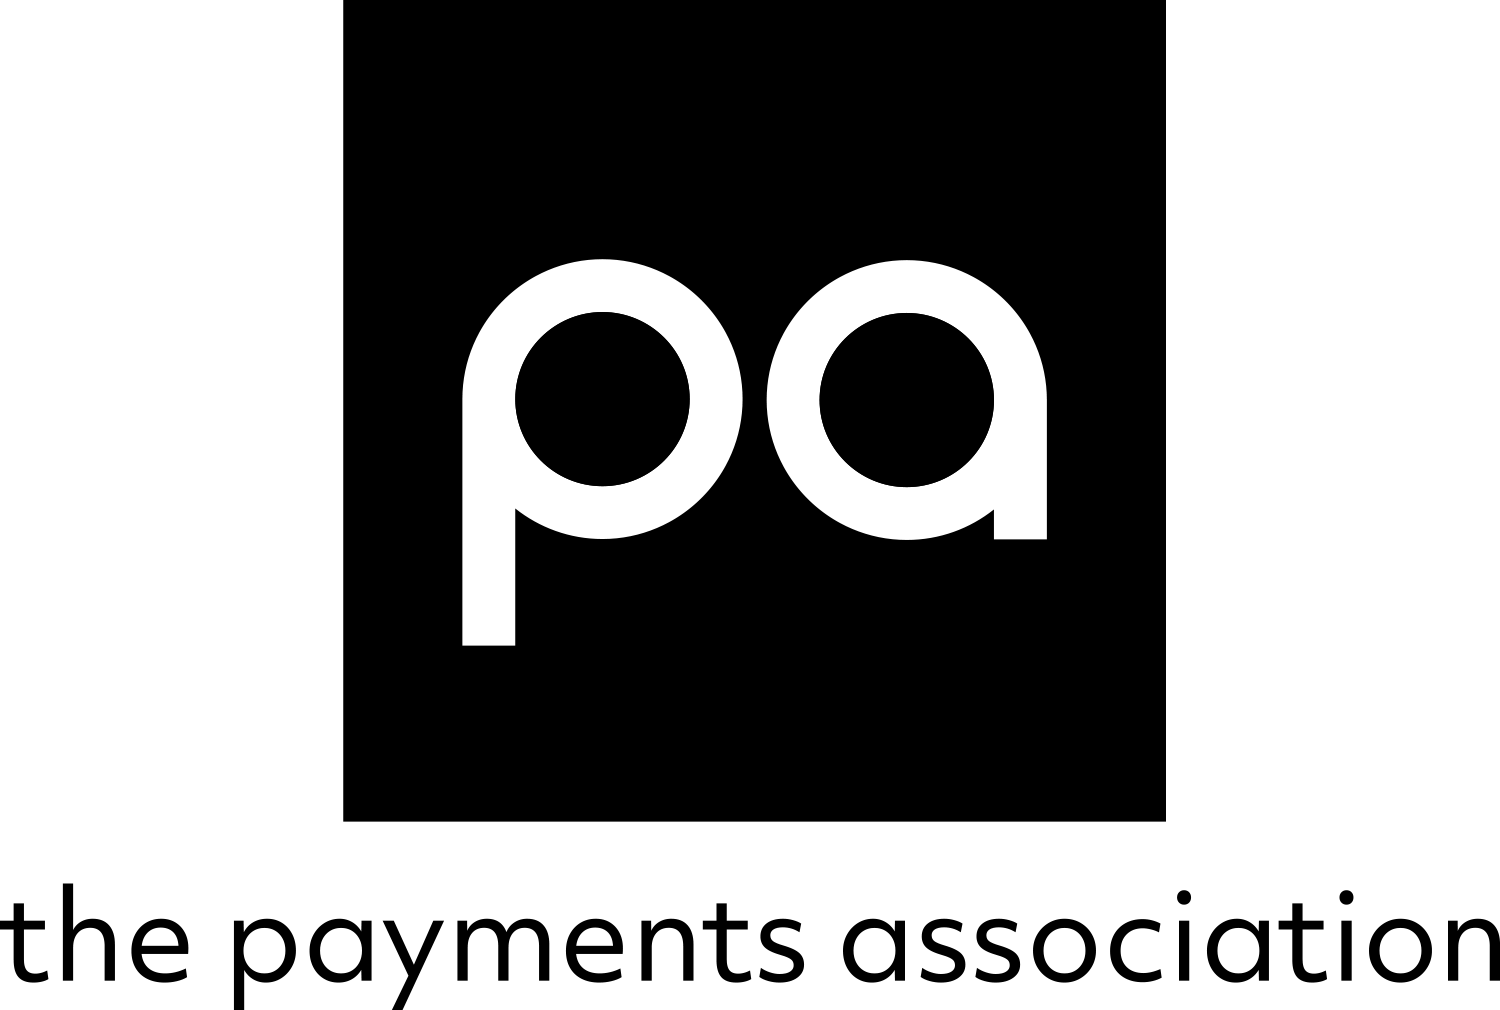 PA logo Black